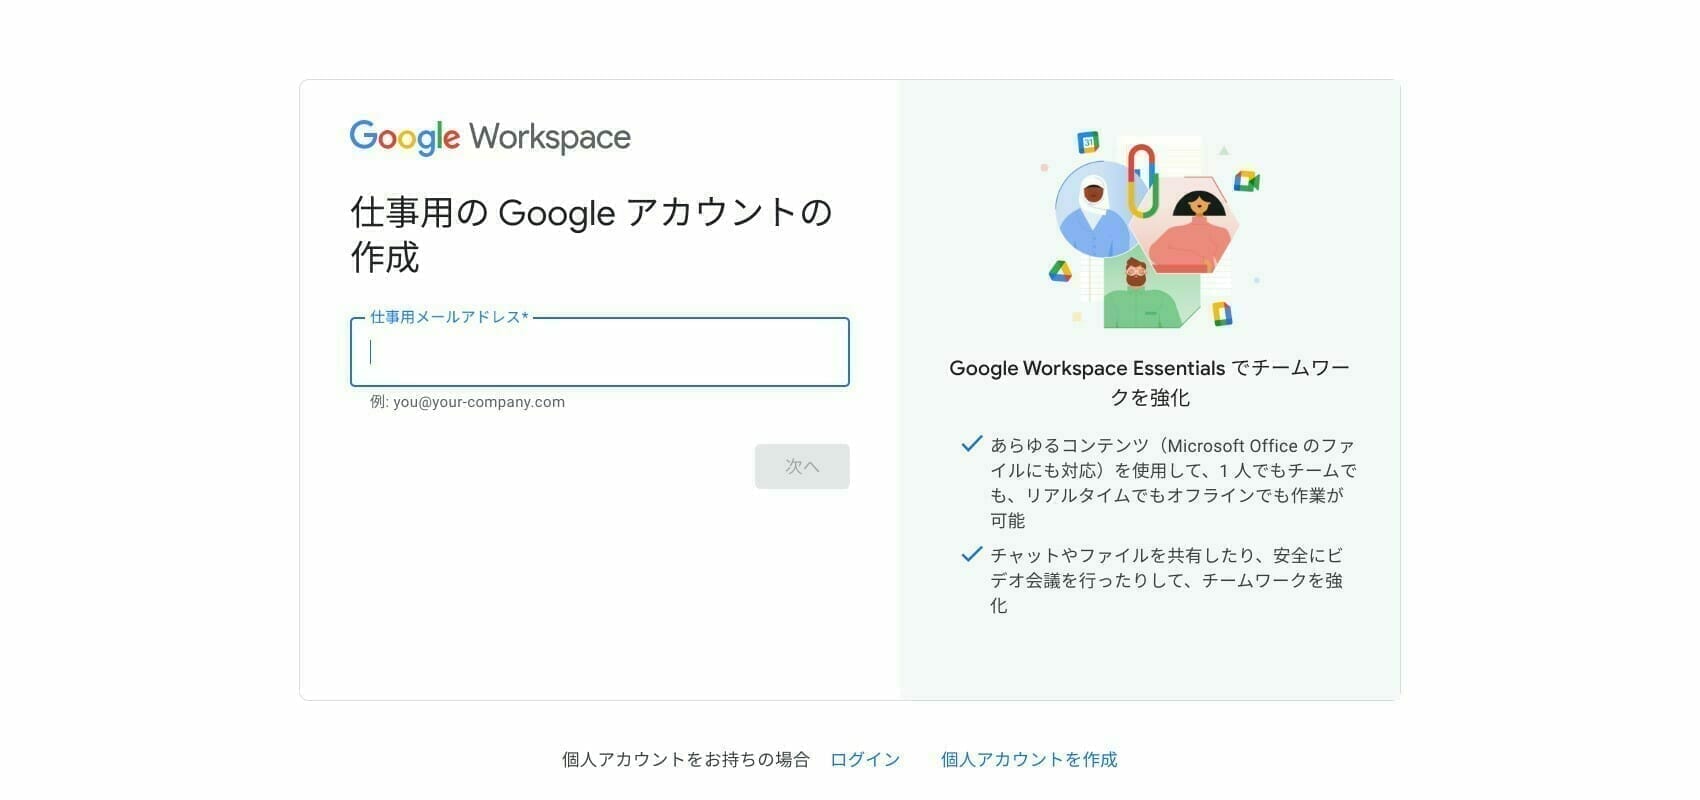 Google Workspace Essentials Starter のチーム アカウントを作成する